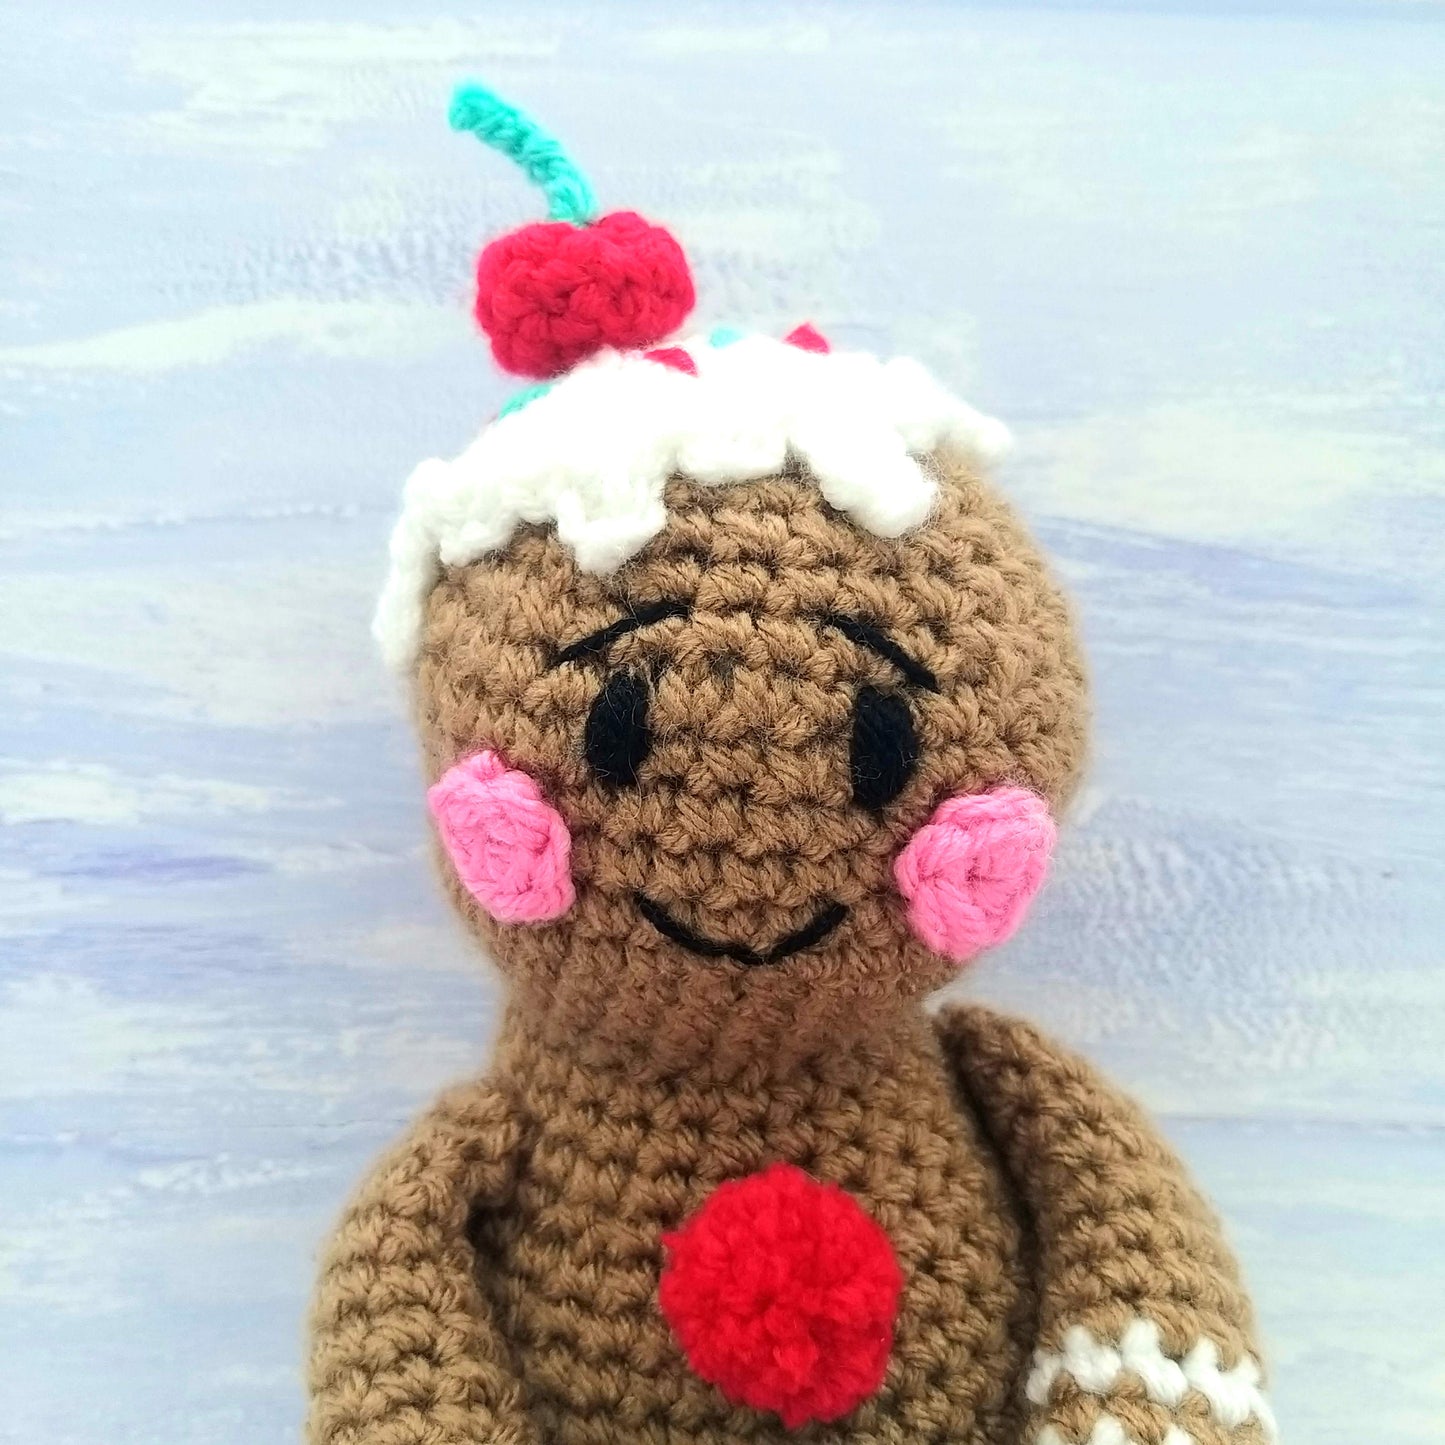 George the Gingerbread Boy - PDF Crochet Pattern